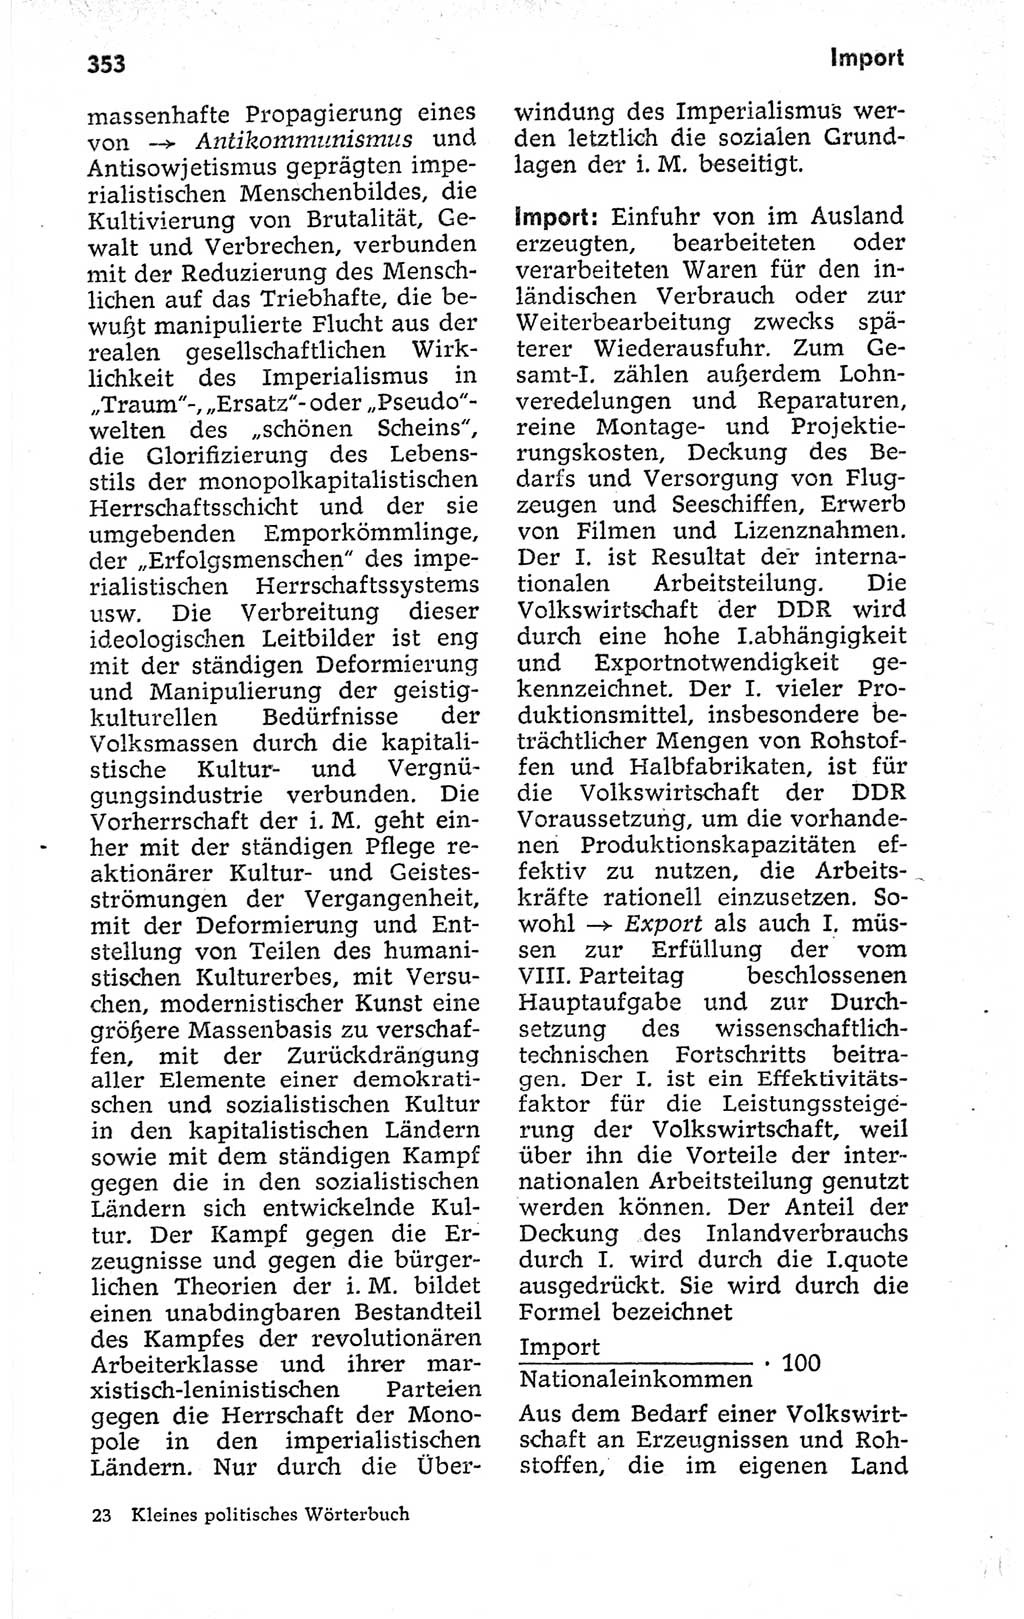 Kleines politisches Wörterbuch [Deutsche Demokratische Republik (DDR)] 1973, Seite 353 (Kl. pol. Wb. DDR 1973, S. 353)